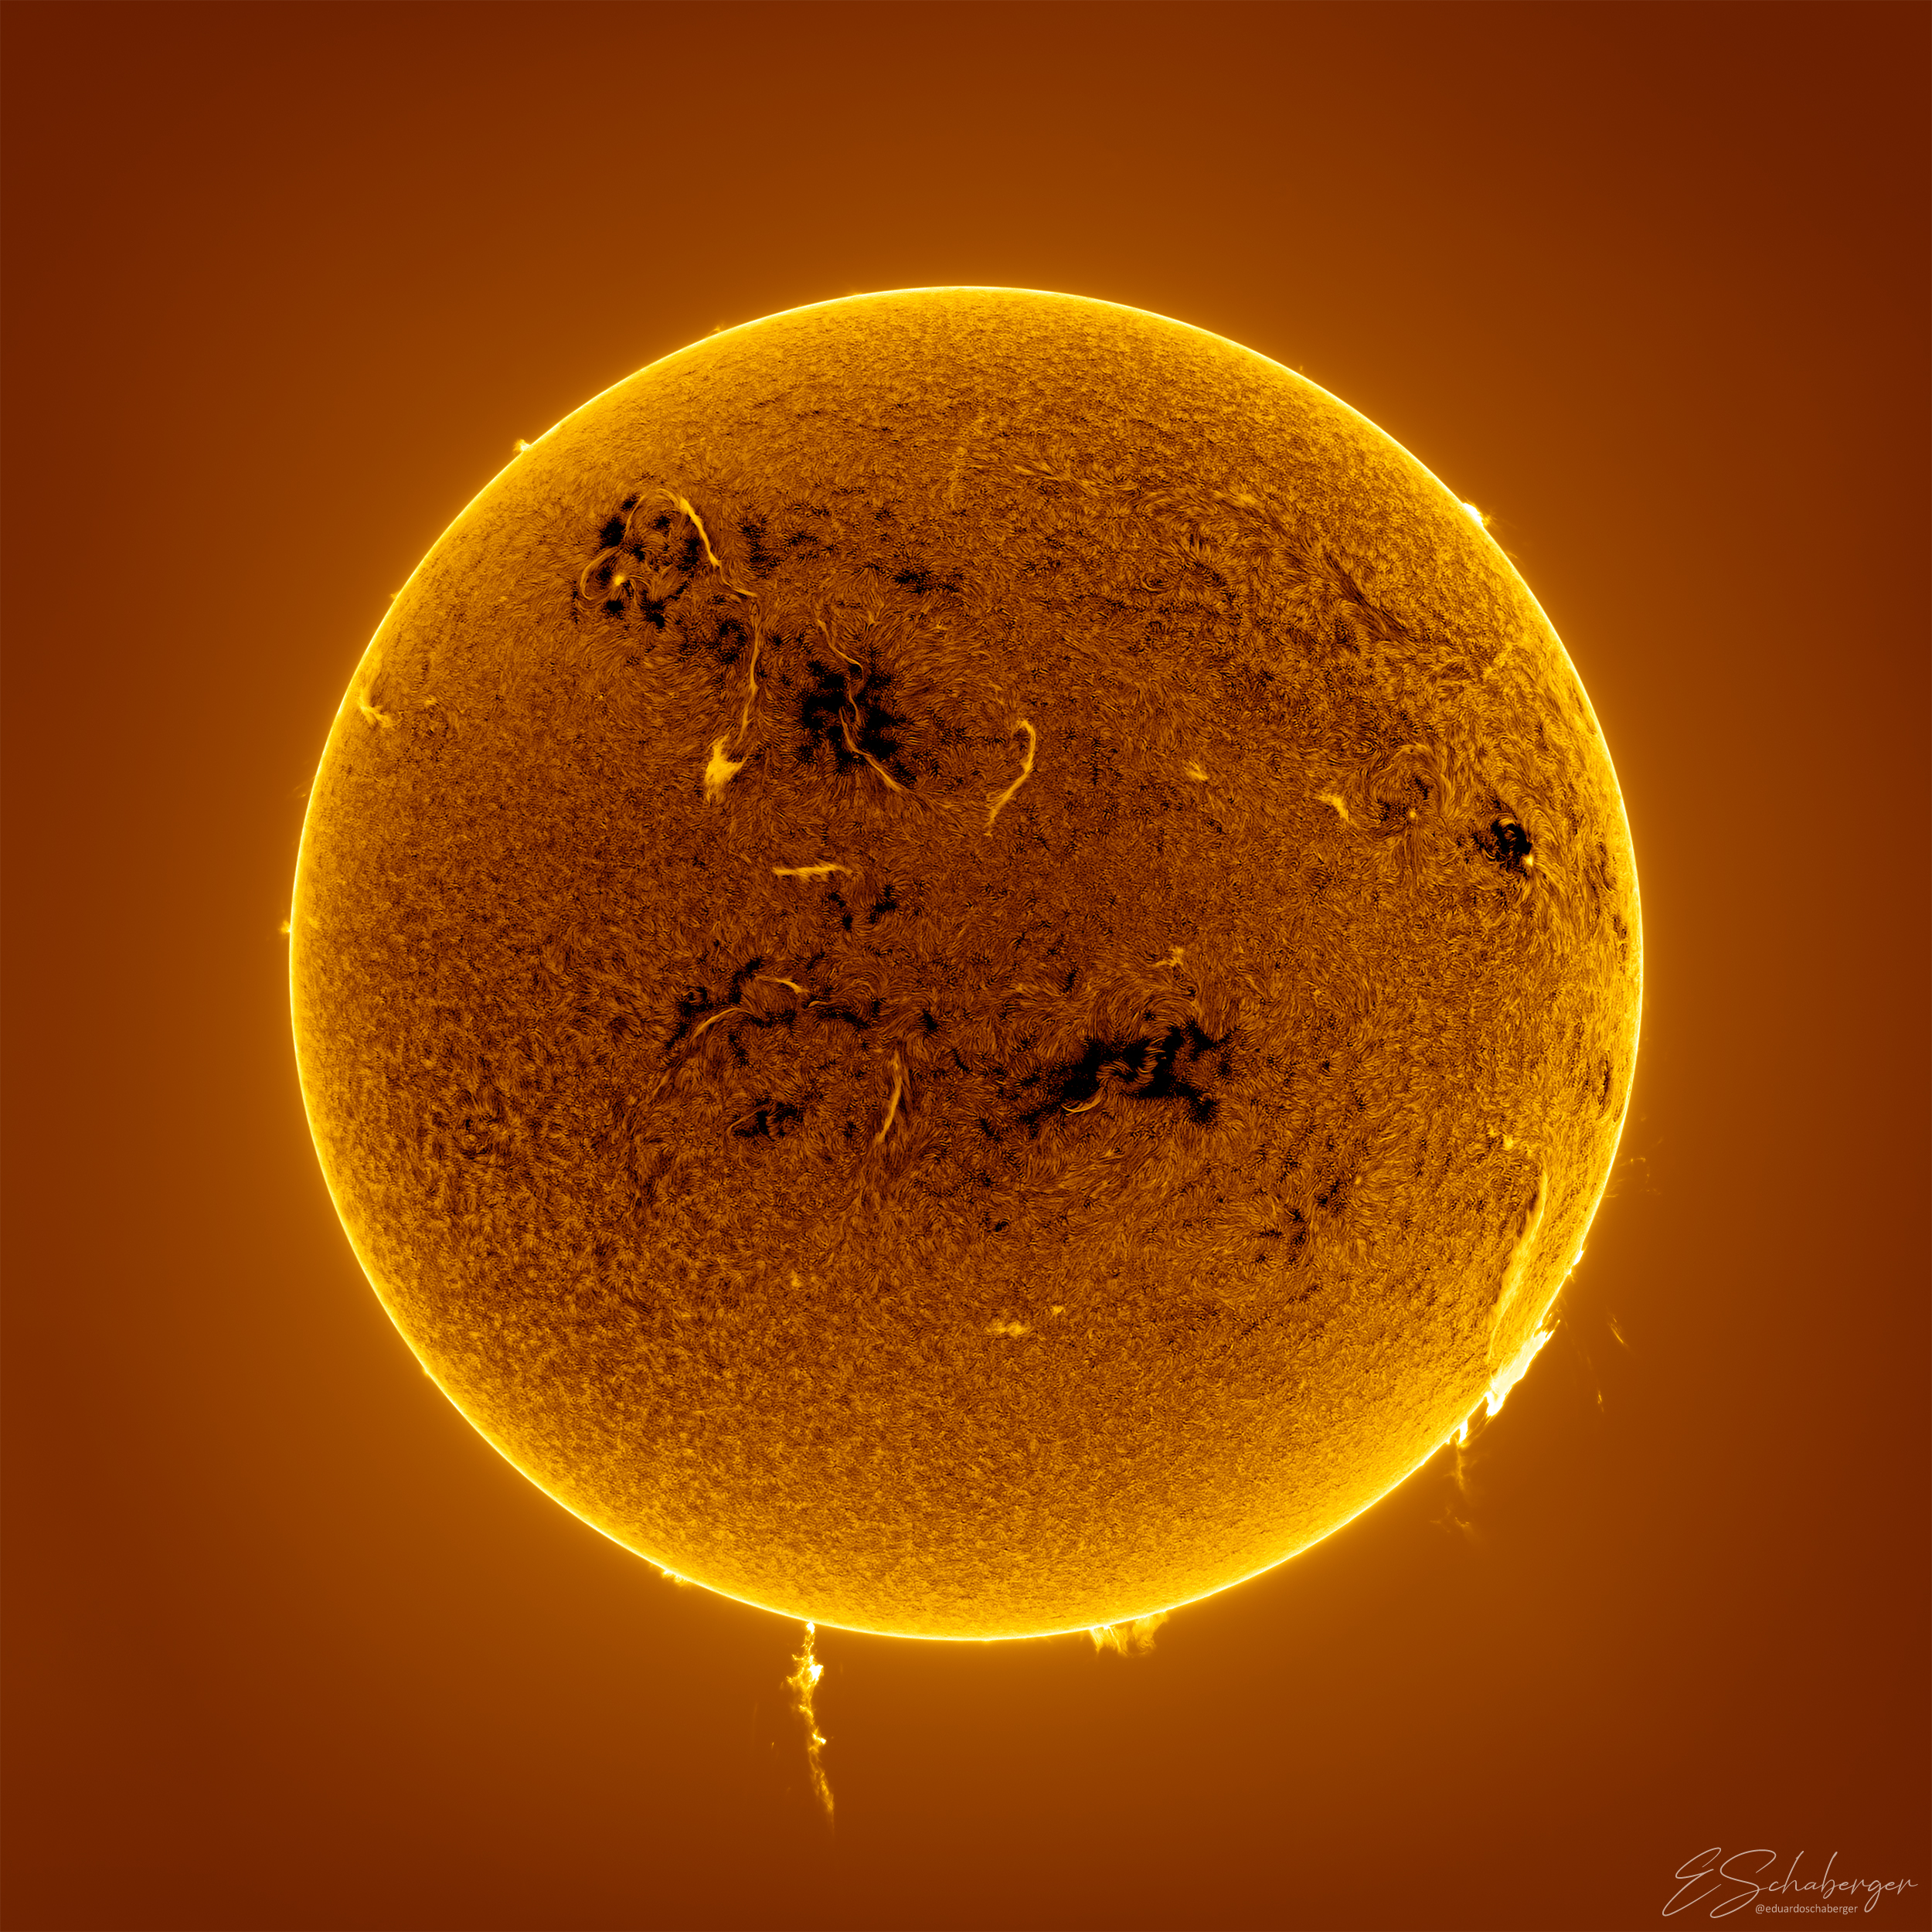 rzadki układ słoneczny z rozbłyskami słonecznymi